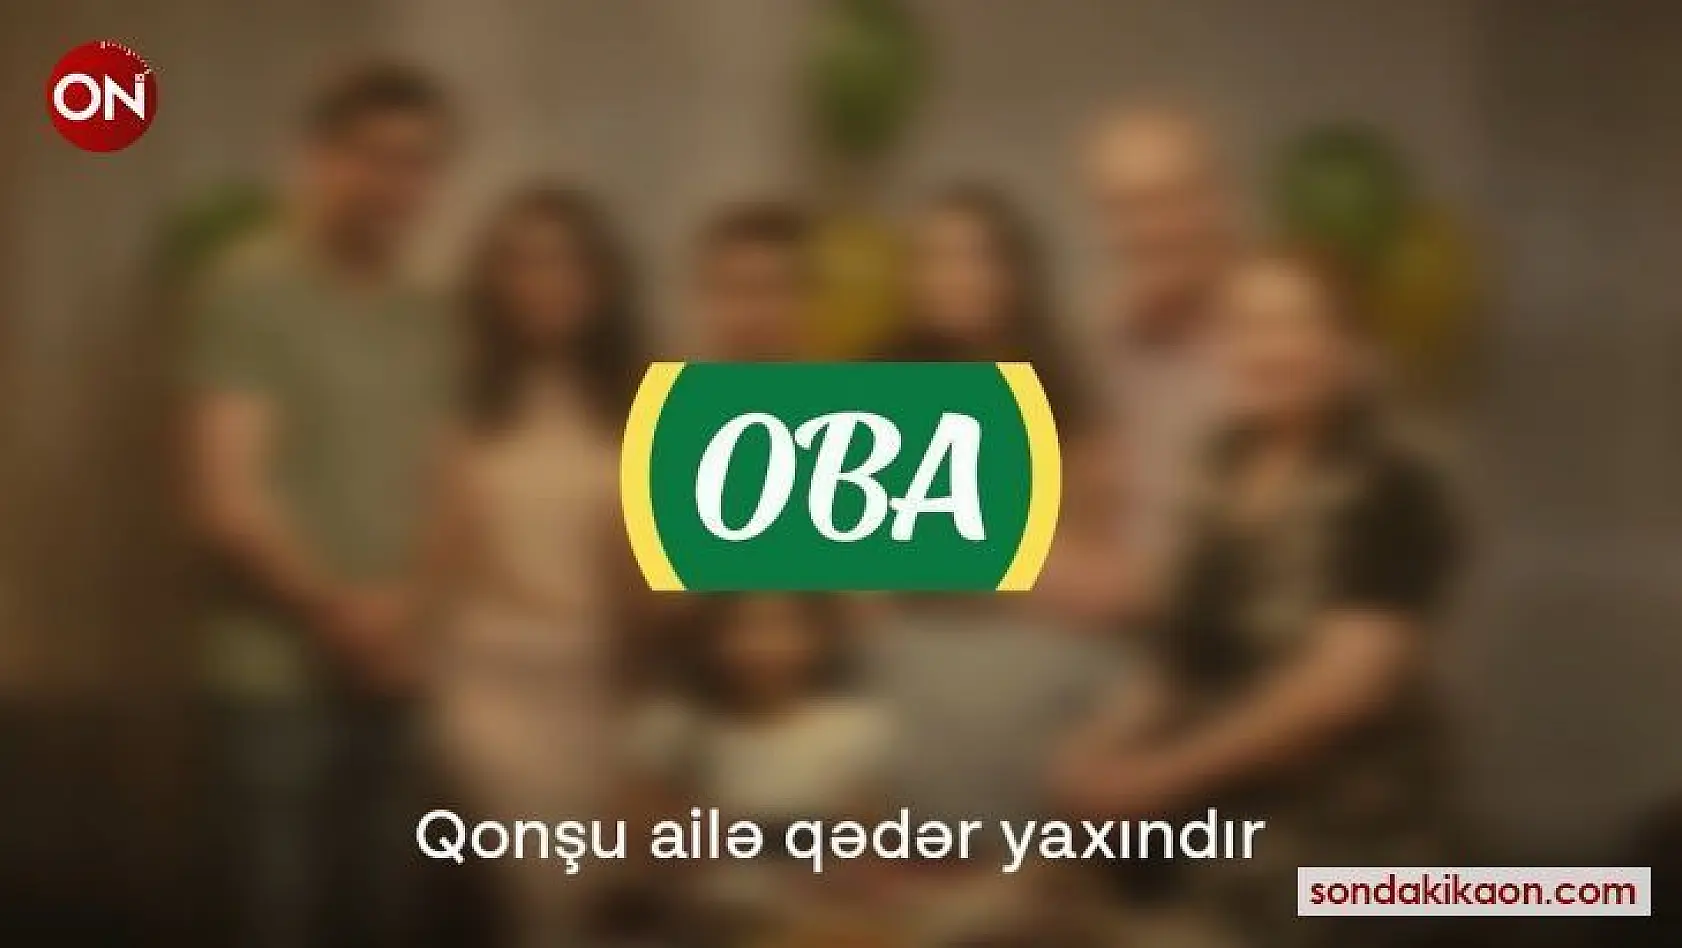 Azerbaycan'da bayram öncesi duygulandıran reklam filmi